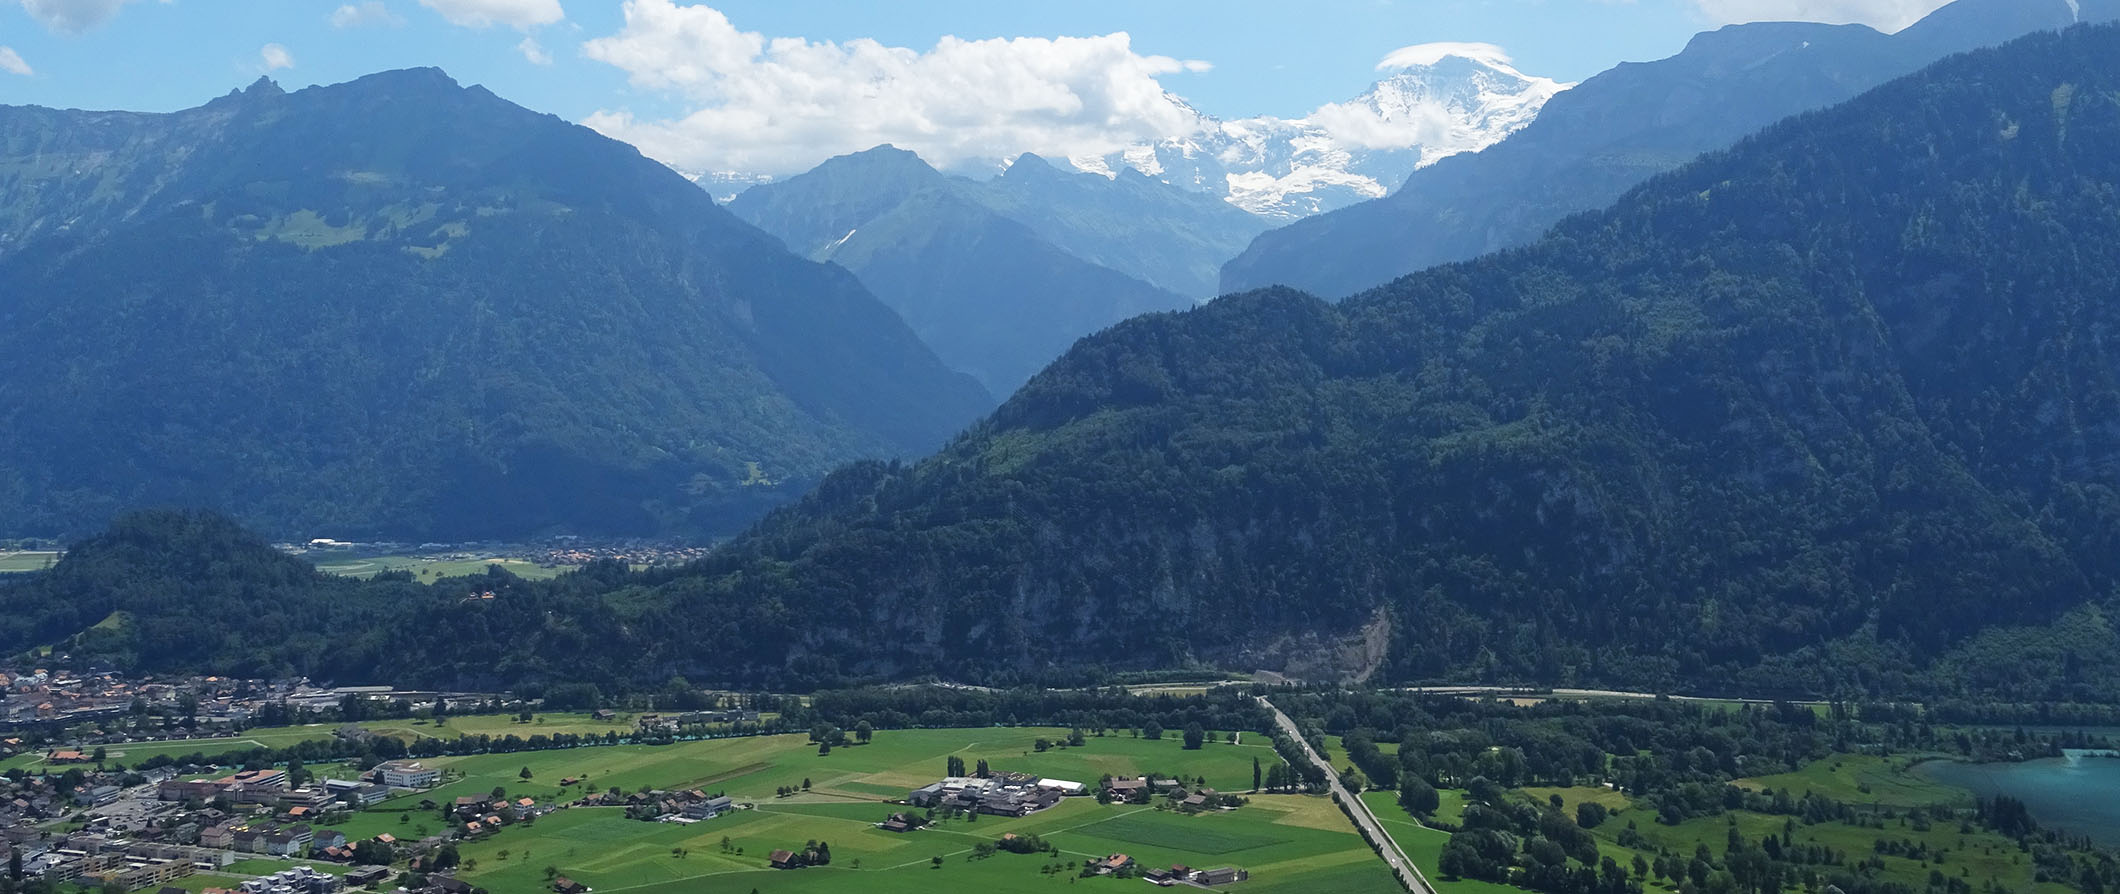 A rolling green mountainous landscape in Interlaken, Switzerland